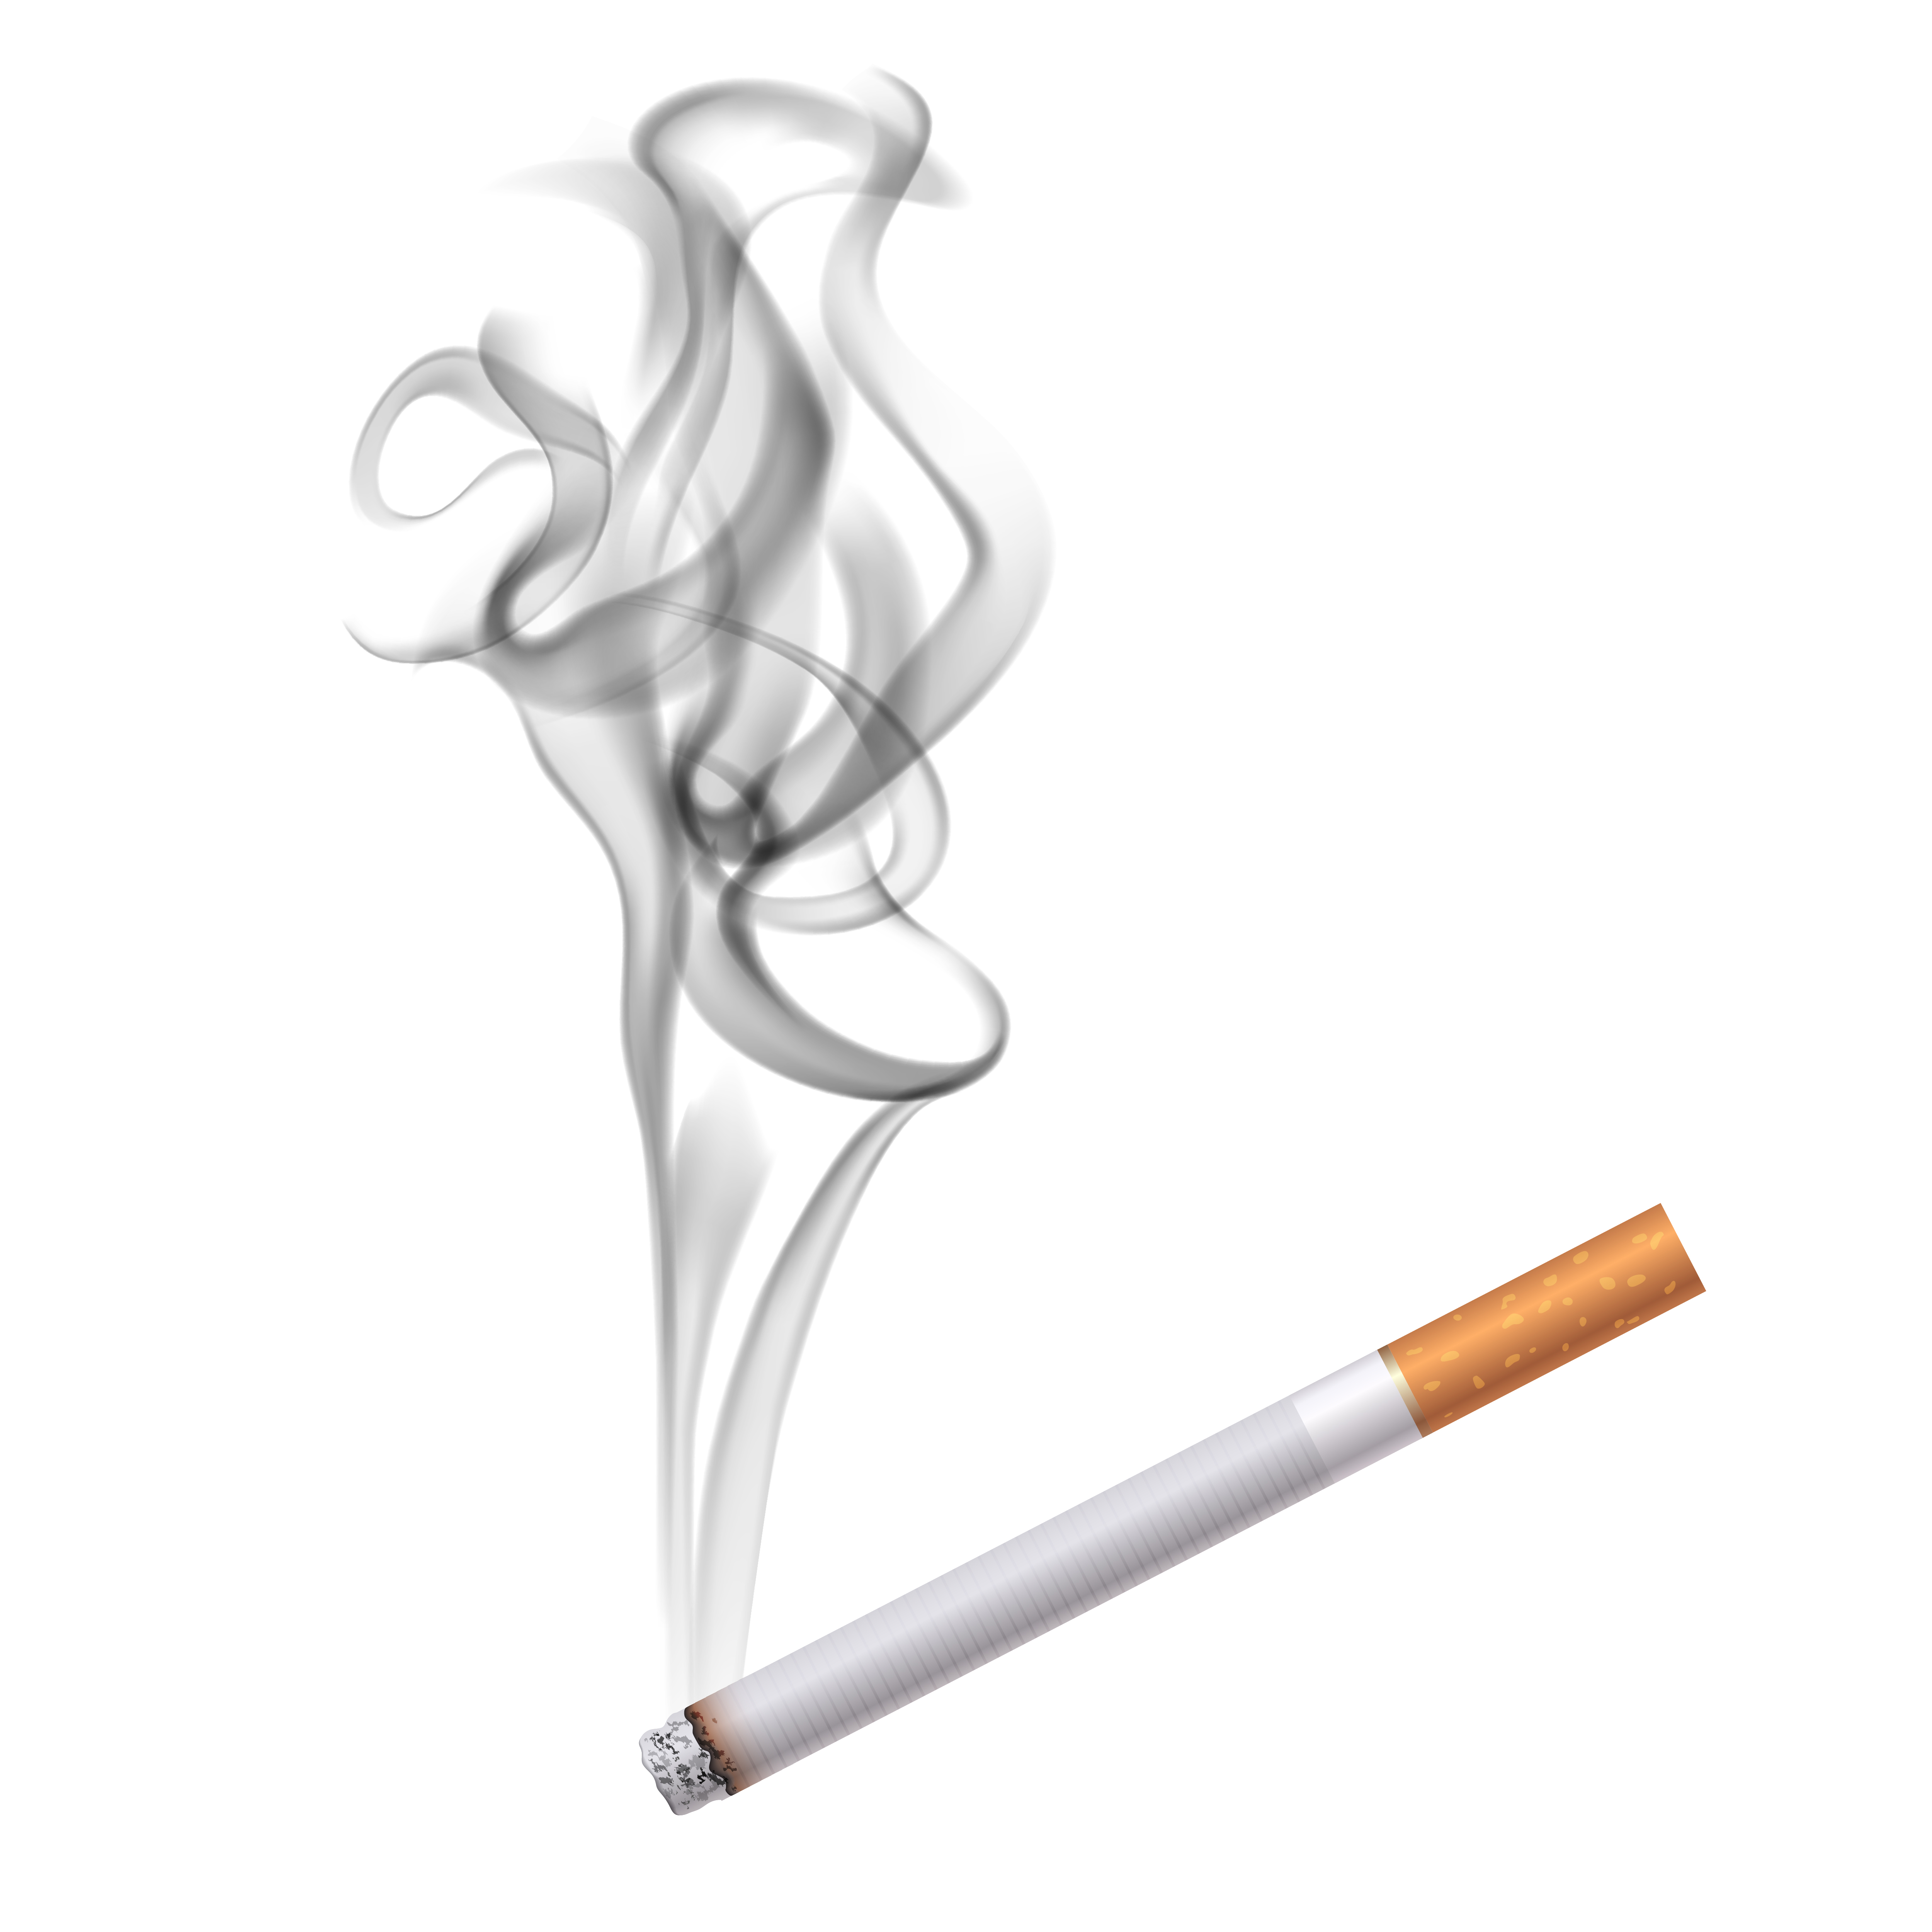 담배를 피우는 사람은 구강암에 걸릴 확률이 10배나 높다